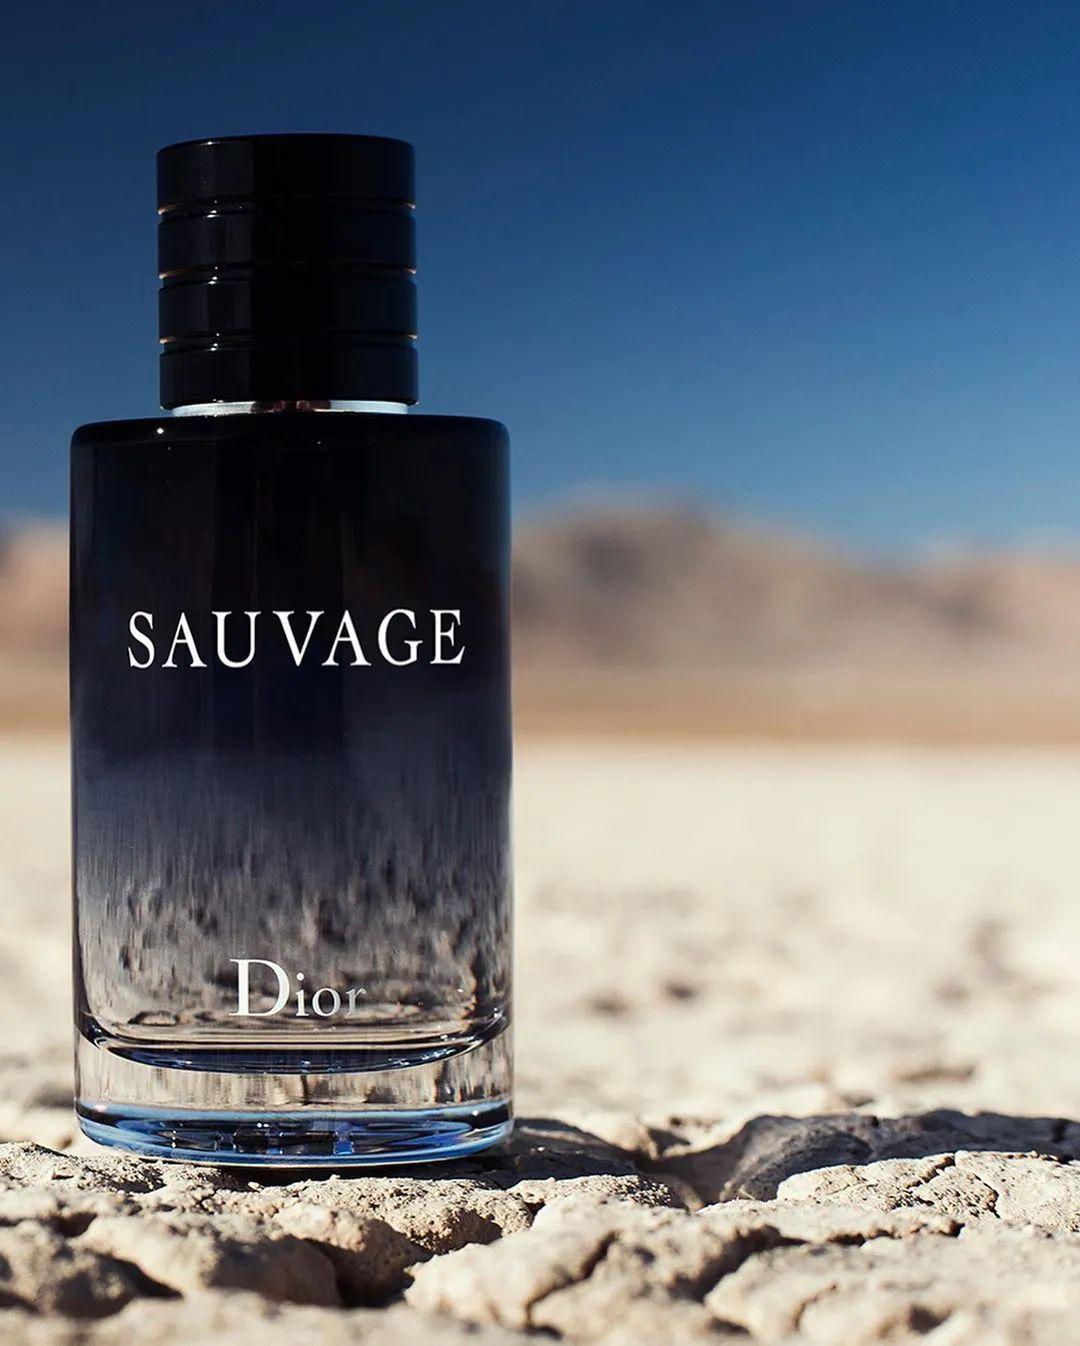 dior迪奥旷野男士香水系列回归自然之境